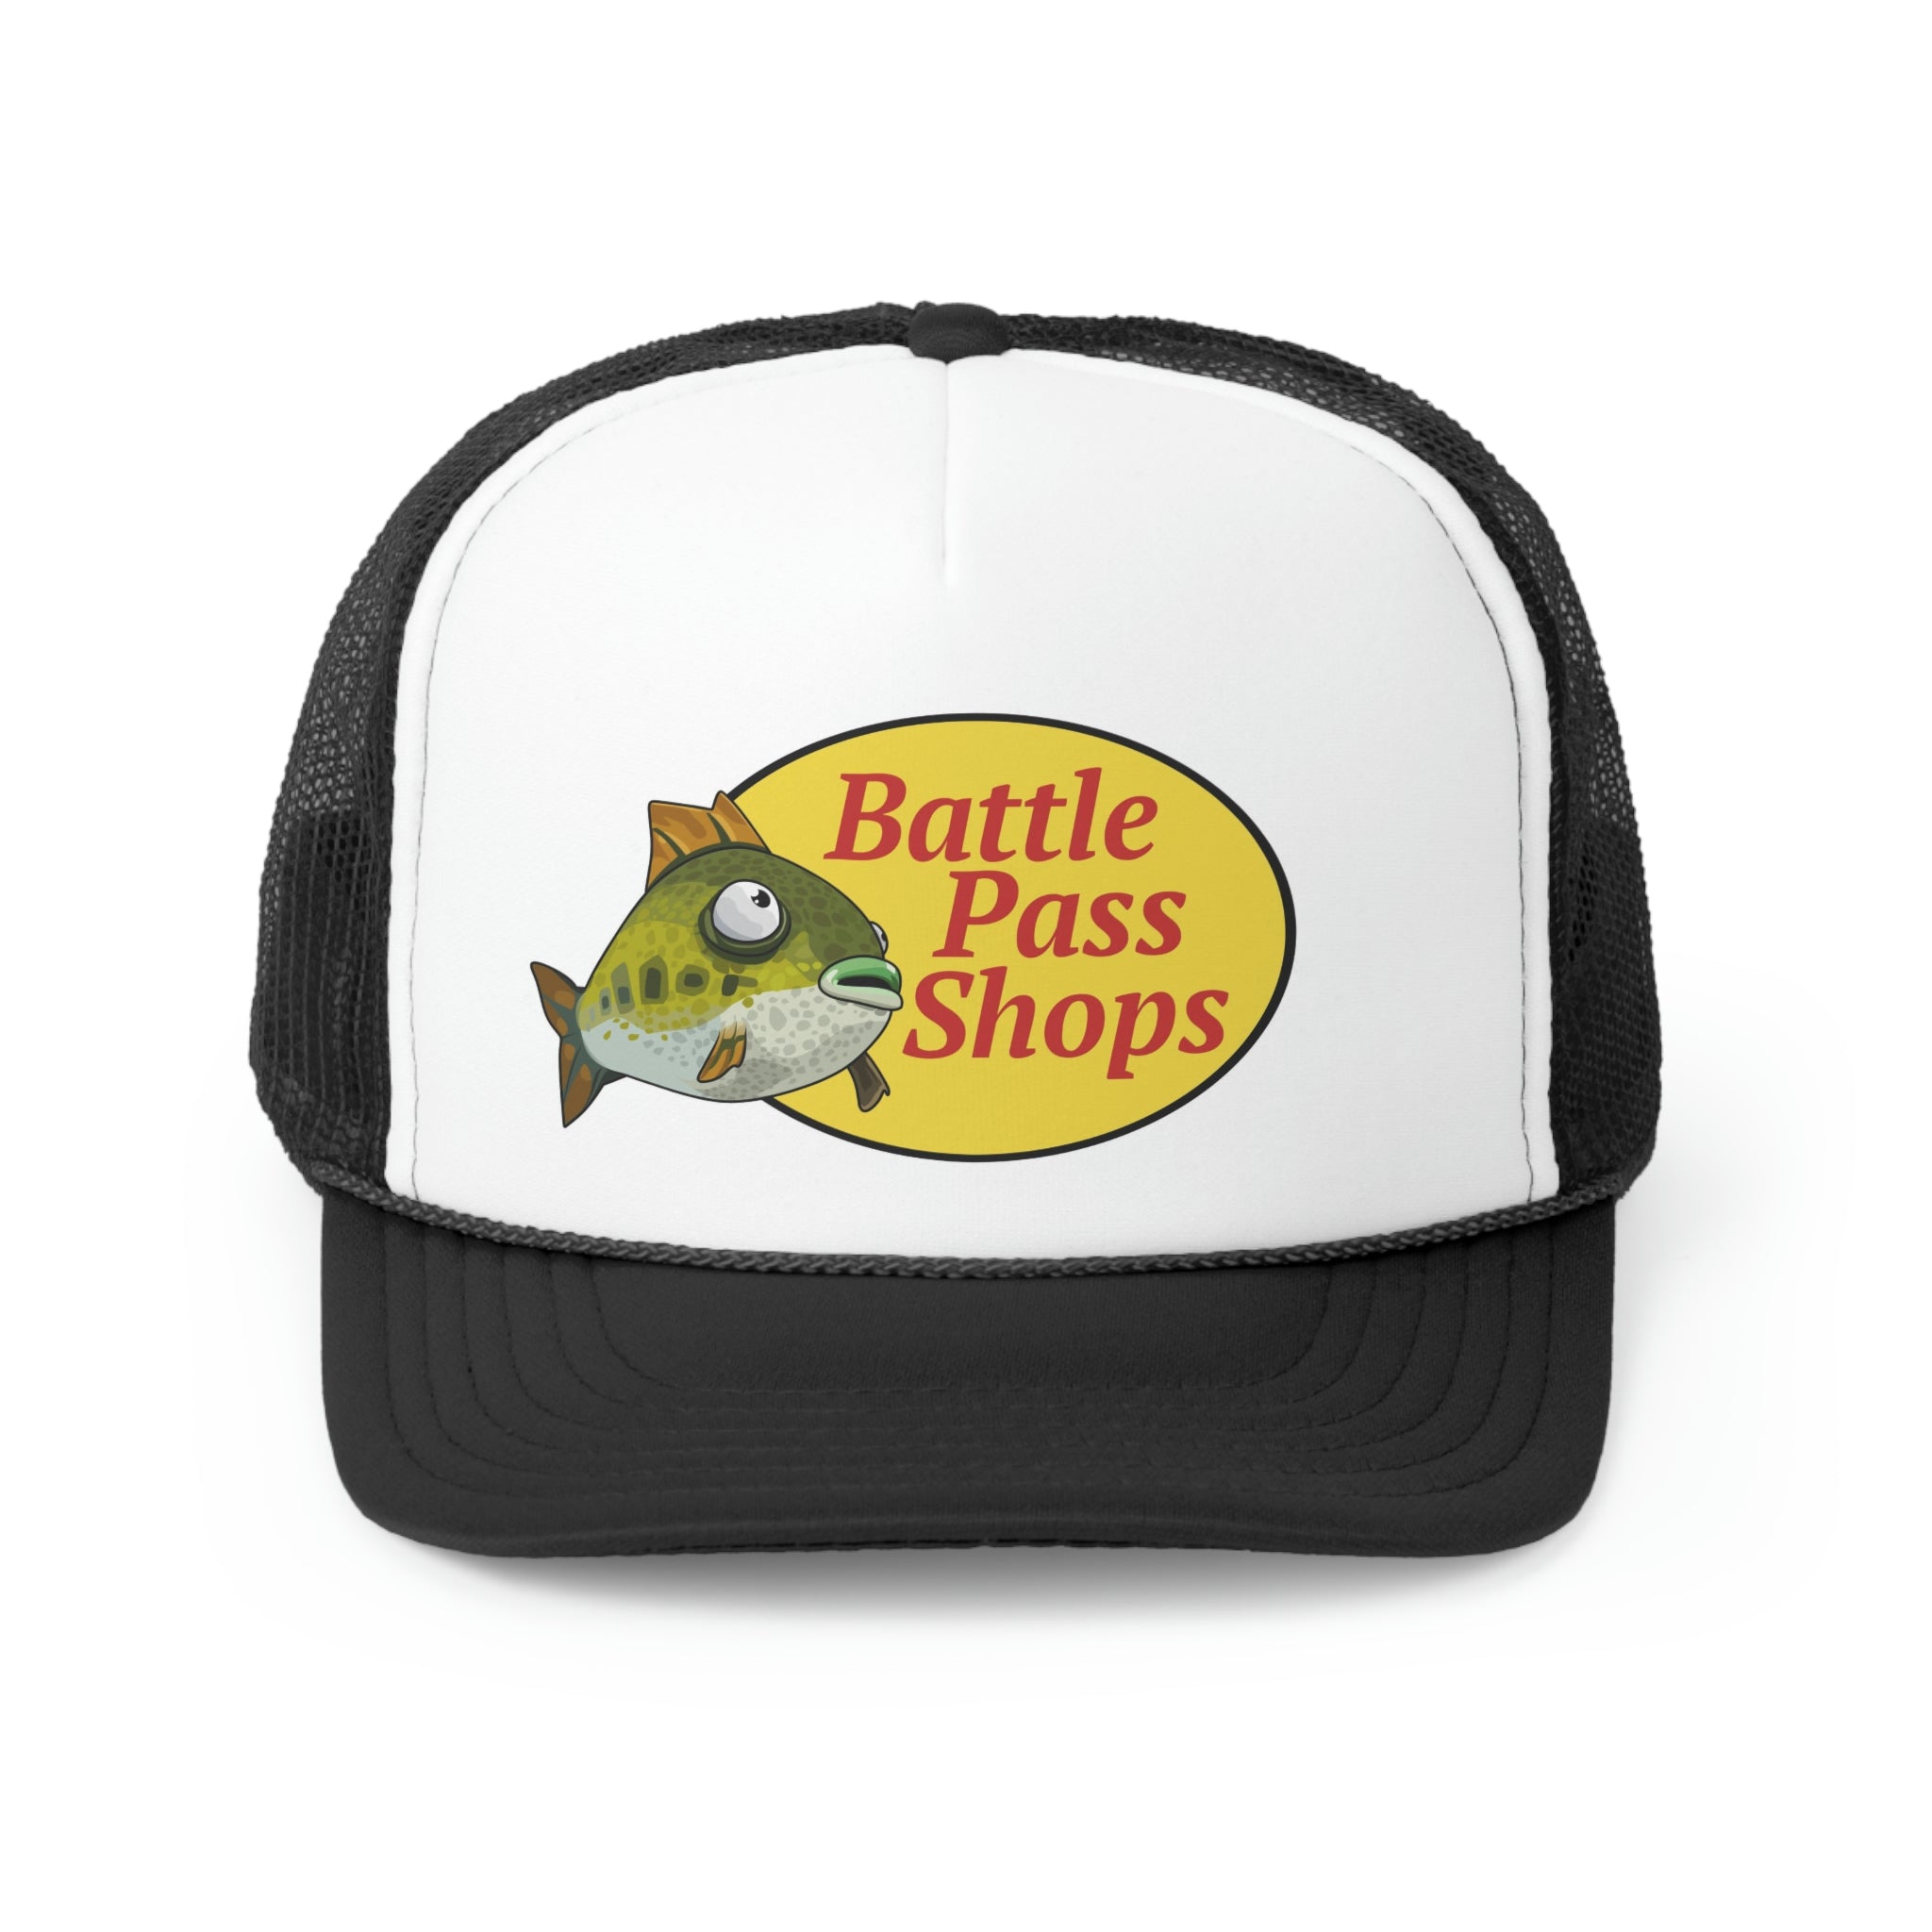 Battle Pass Shops Trucker Hats